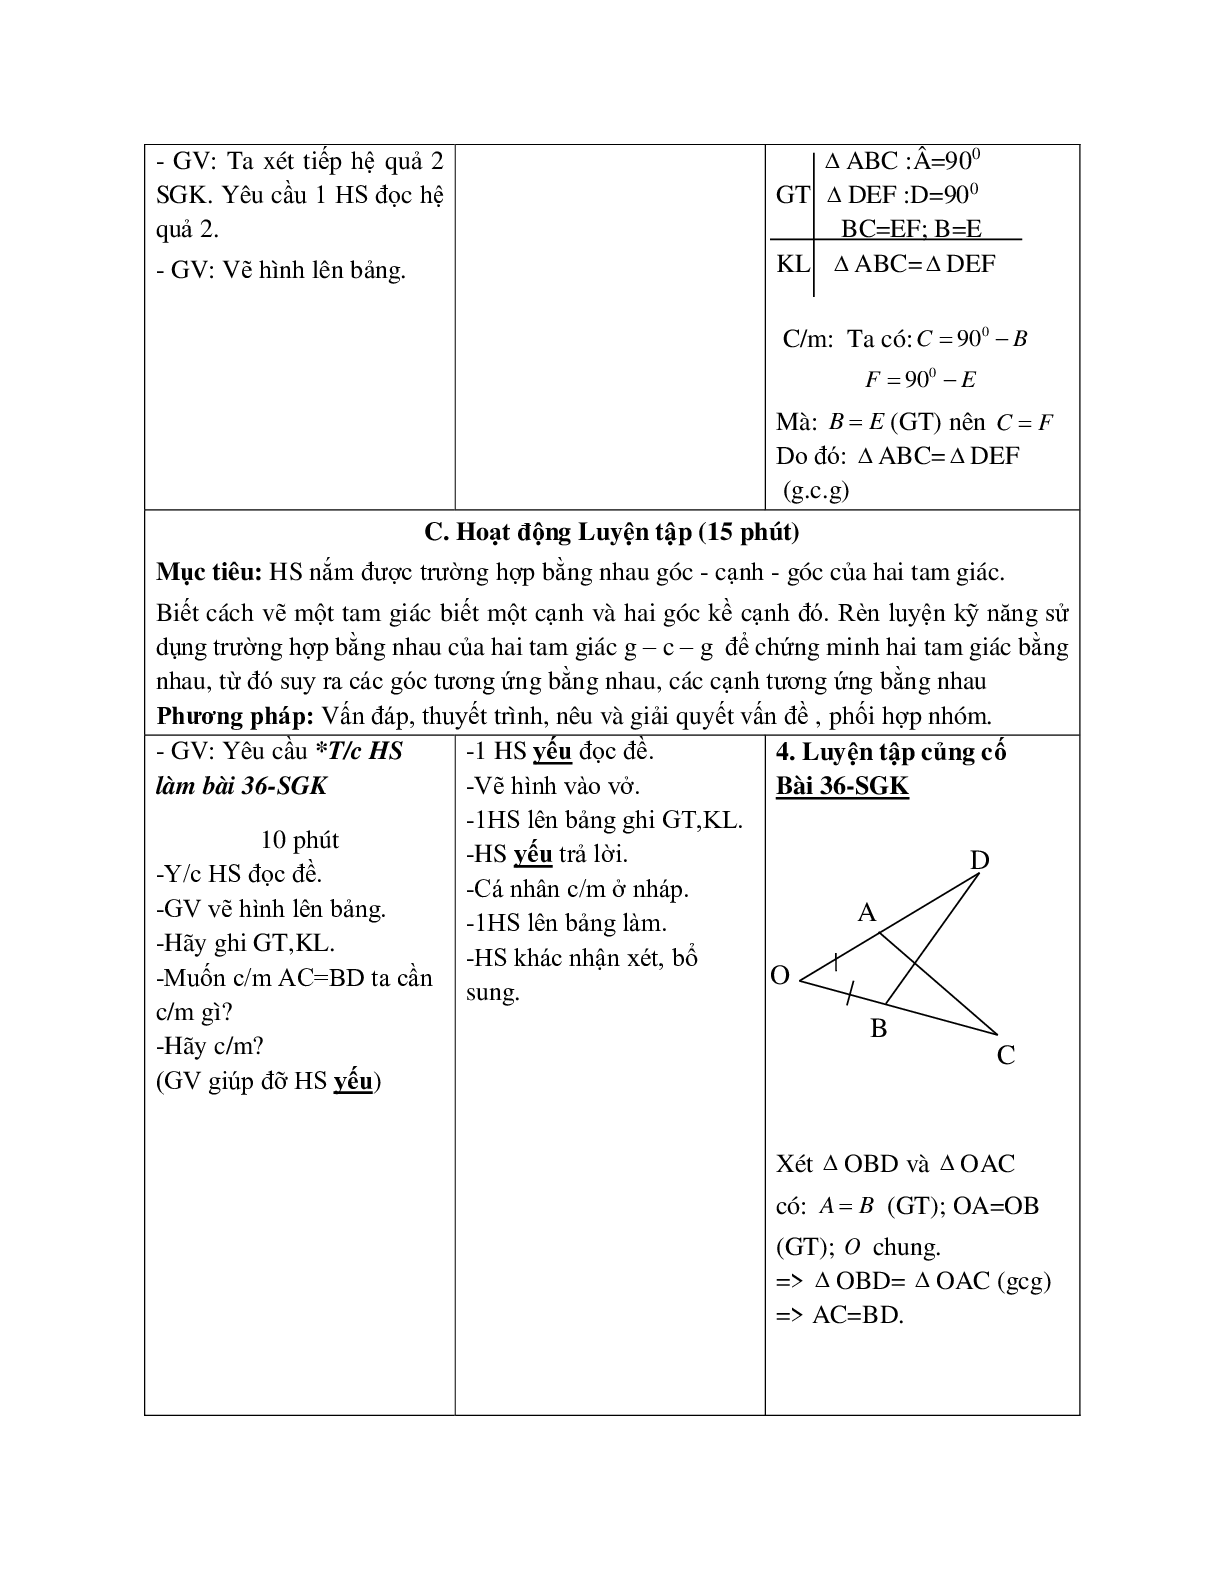 Giáo án Toán học 7 bài 5: Trường hợp bằng nhau thứ ba của tam giác g.c.g (TT) hay nhất (trang 3)